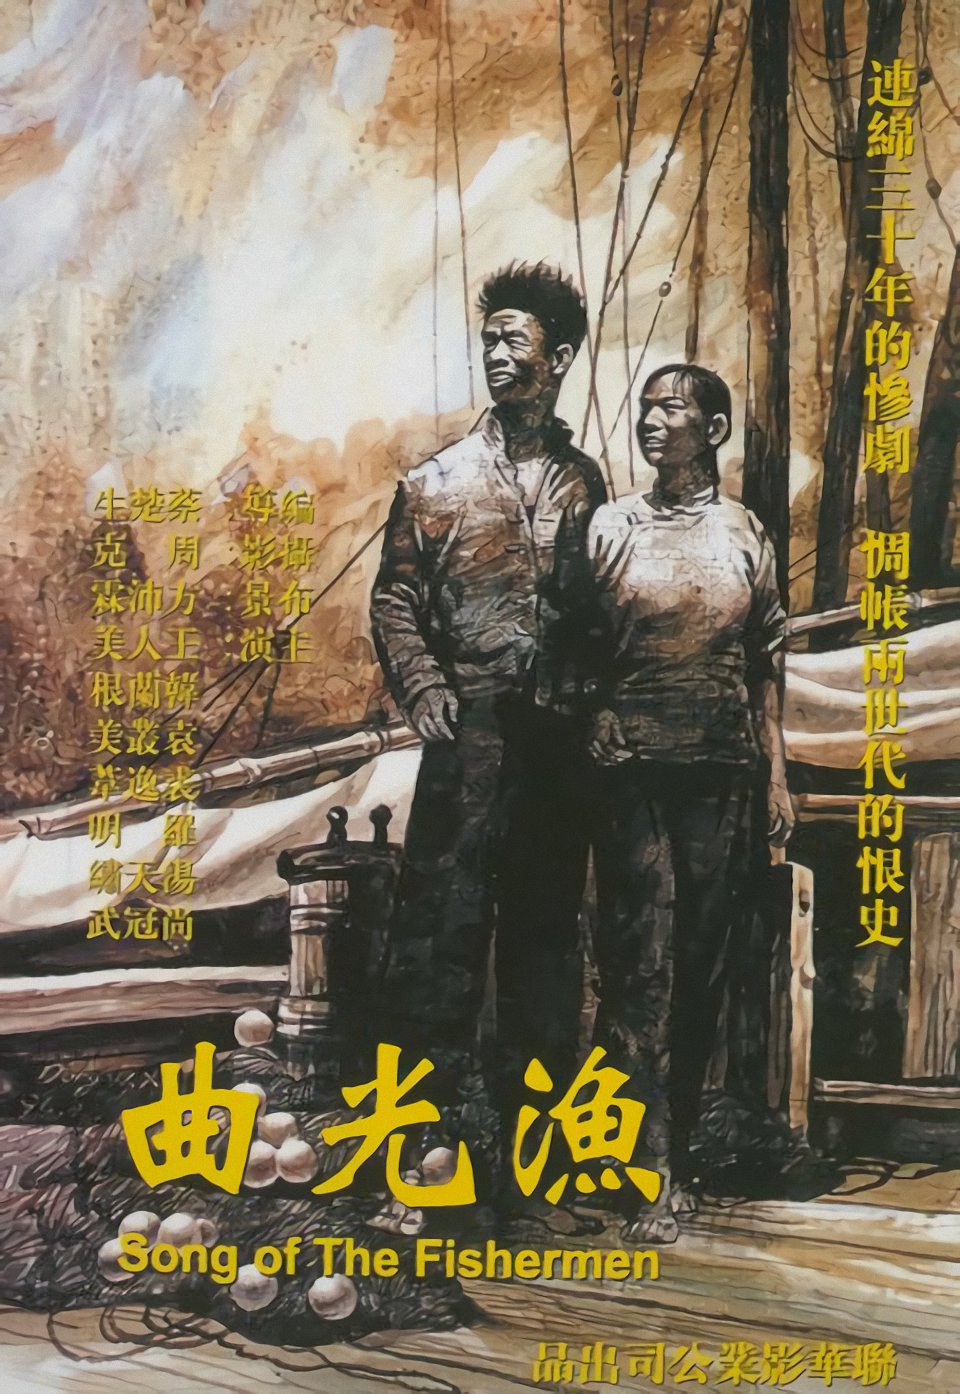 第一部获得国际奖项的中国电影